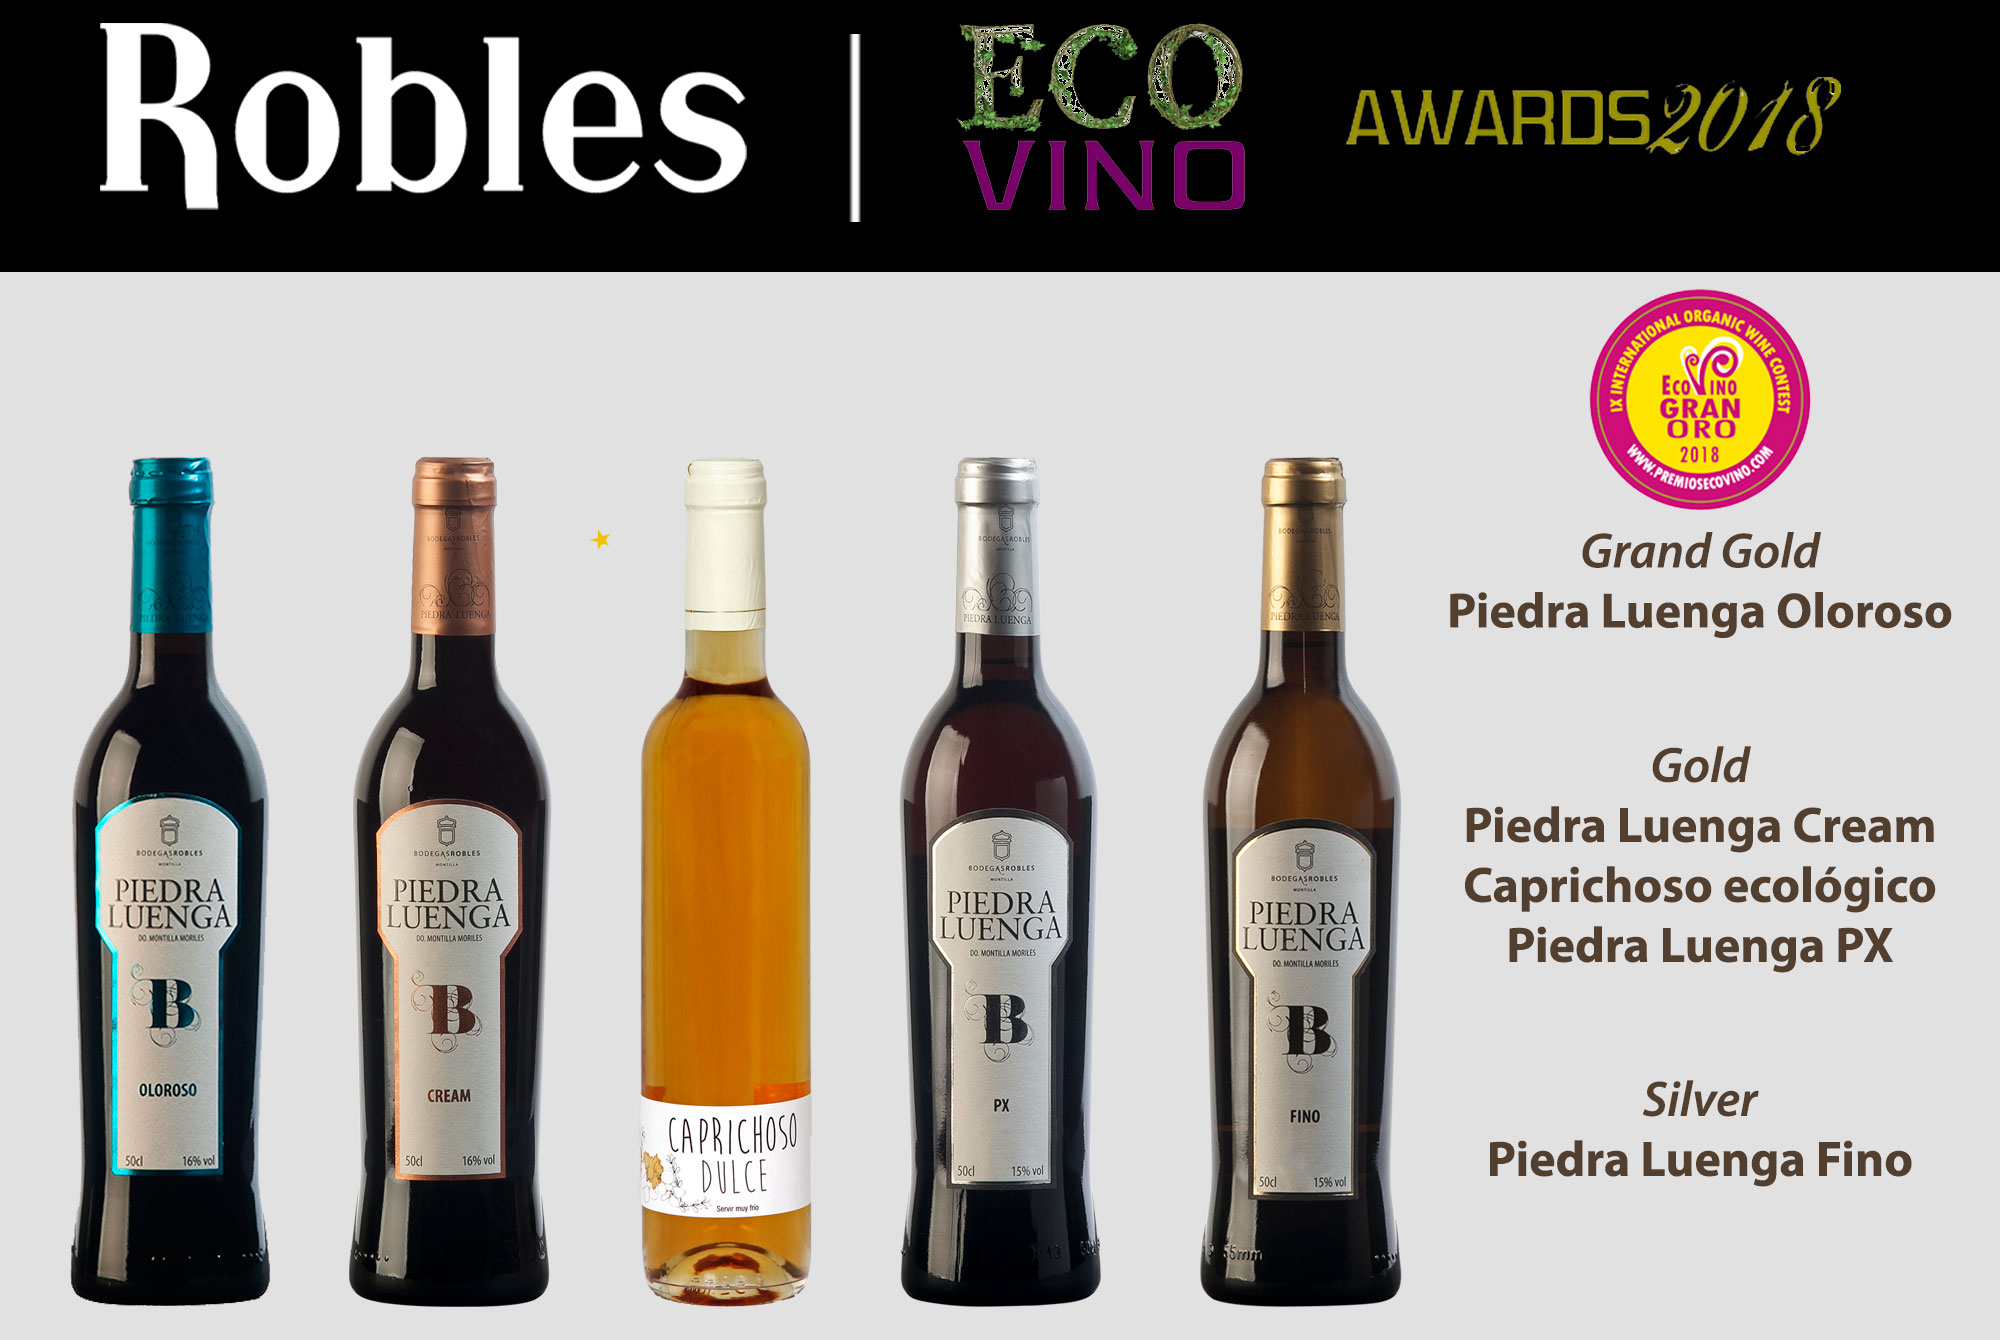 Premios Ecovino / Bodegas Robles